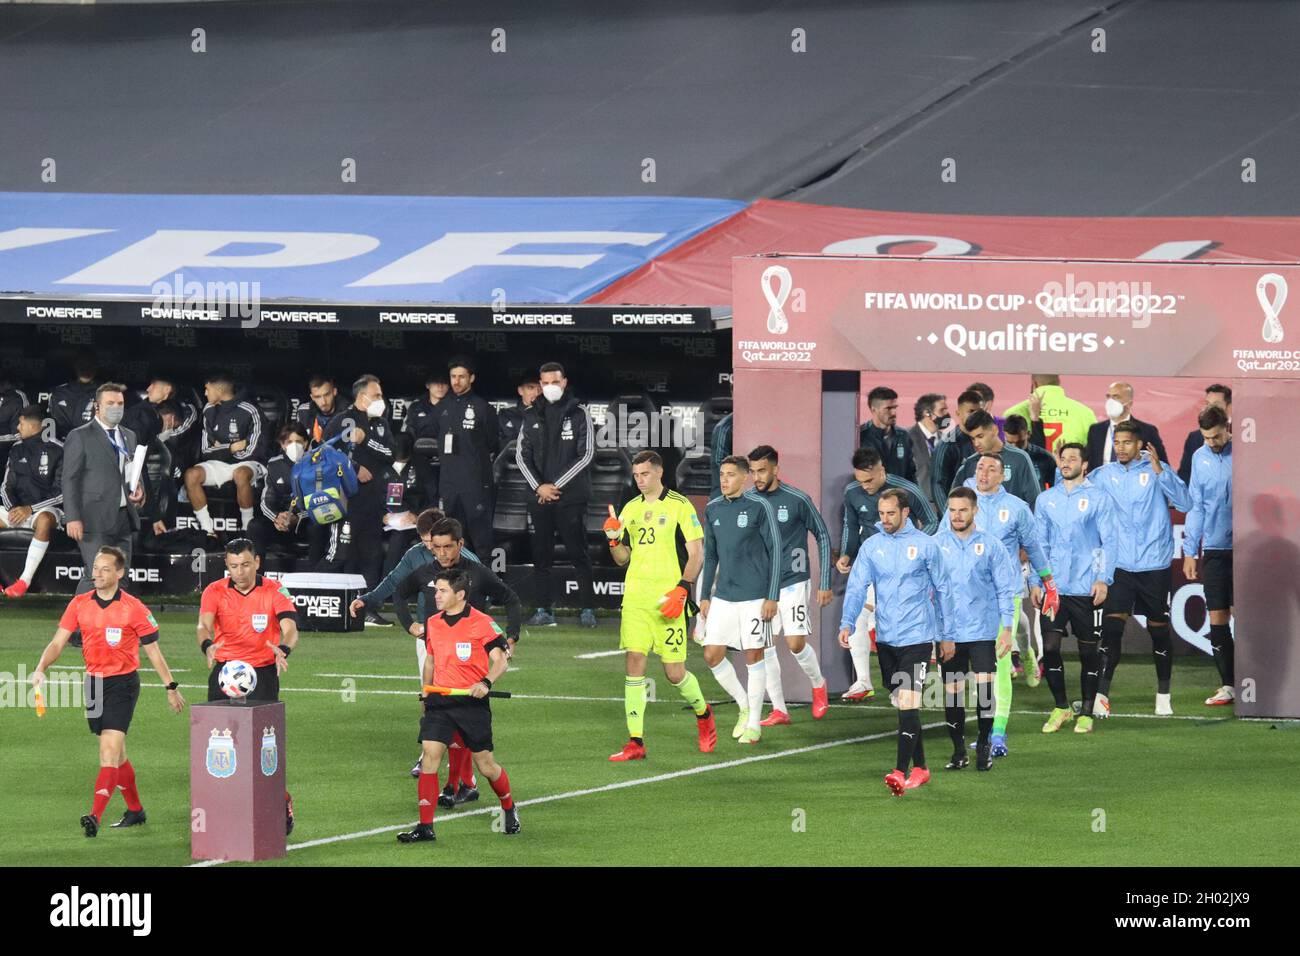 BUENOS AIRES, 11.10.2021: L'Argentine affronte l'Uruguay pour le 5ème tour de qualificatifs pour la coupe du monde Qatar 2022 au stade Monumental. Banque D'Images